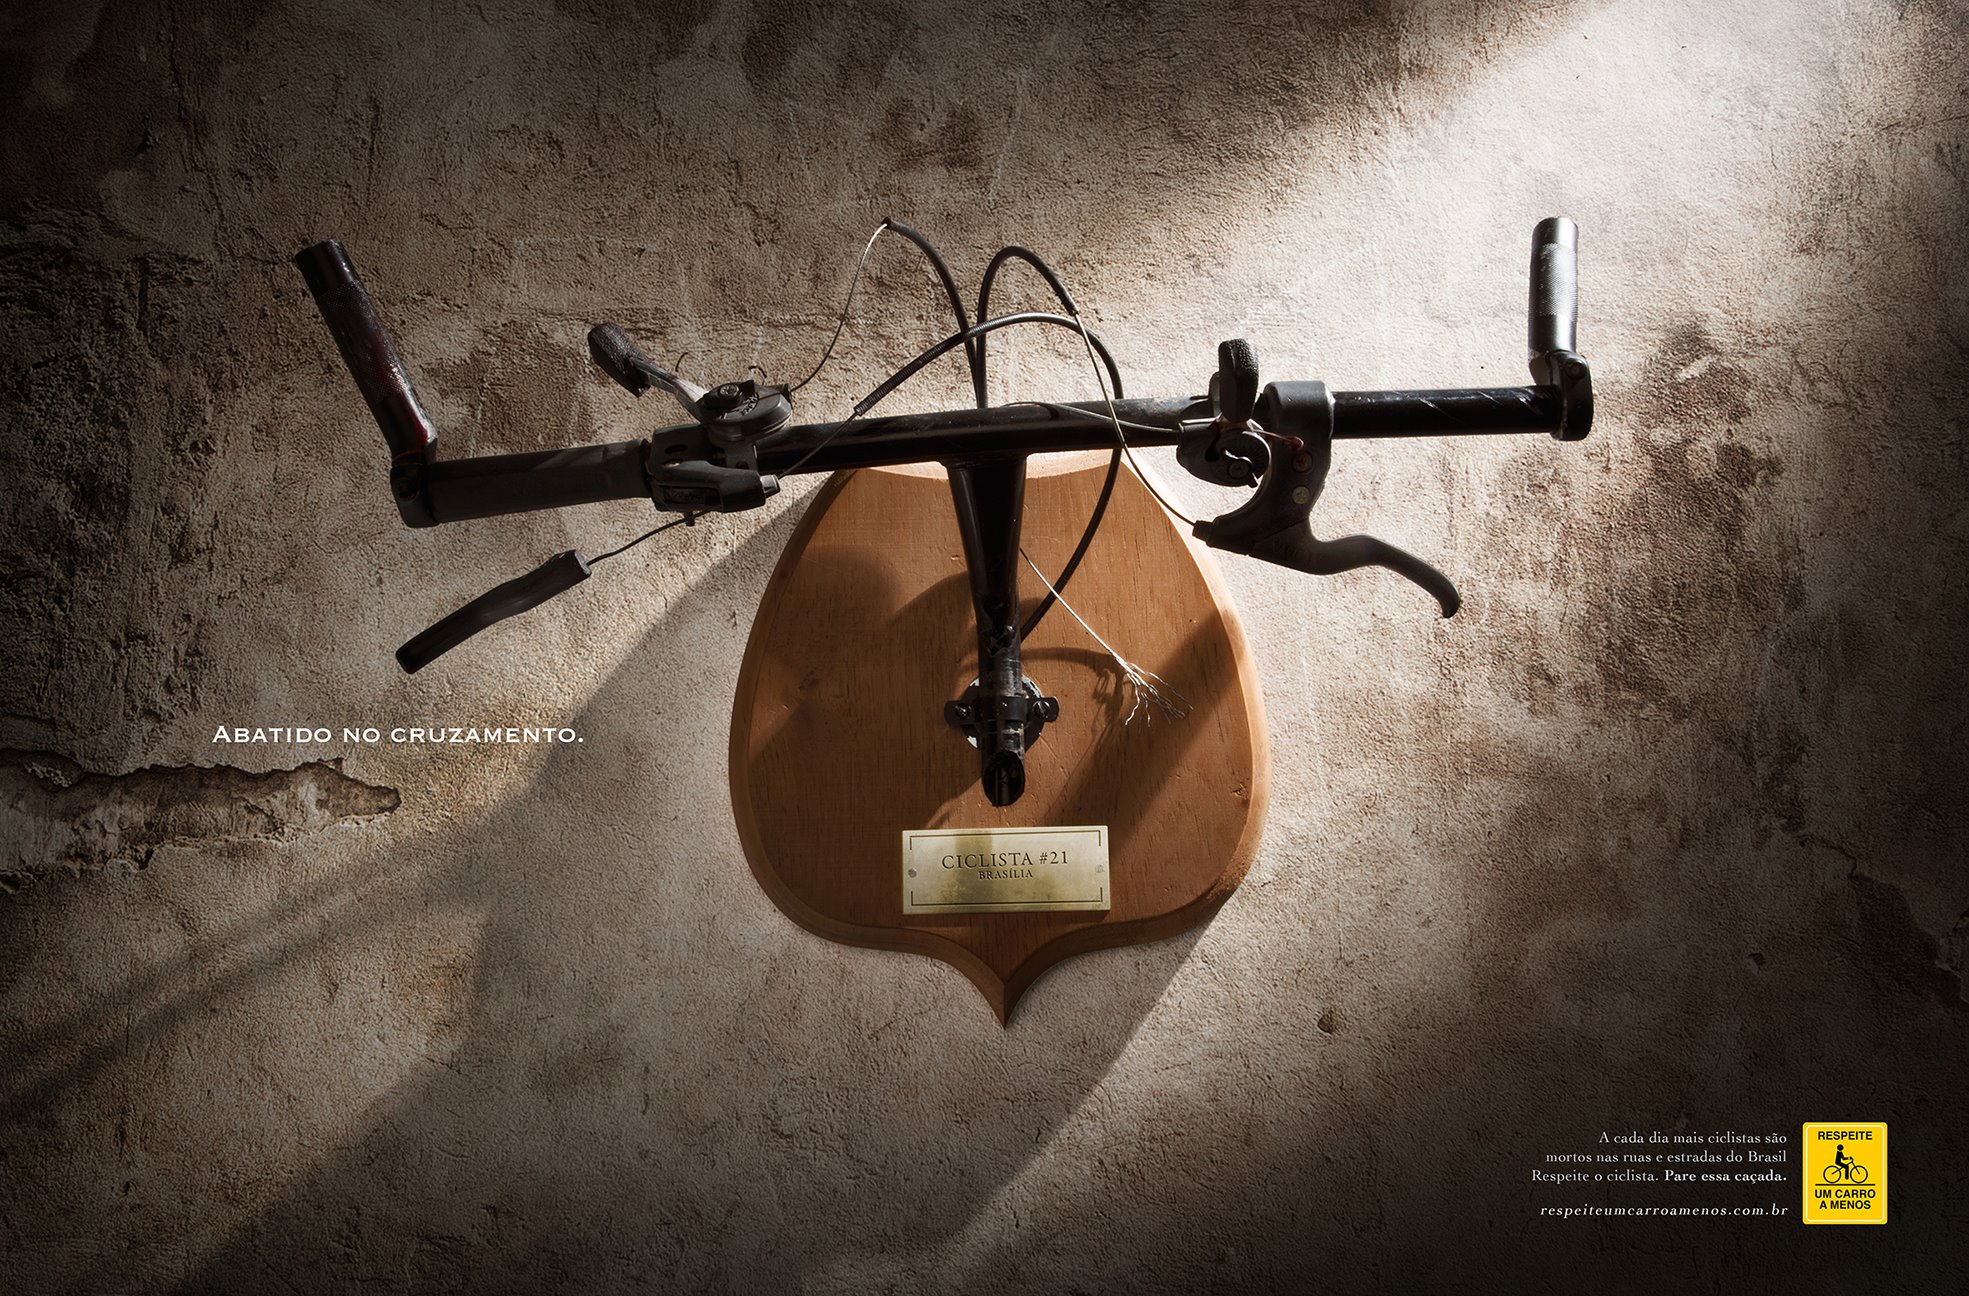 Социальная реклама в Бразилии: велоруль как охотничий трофей